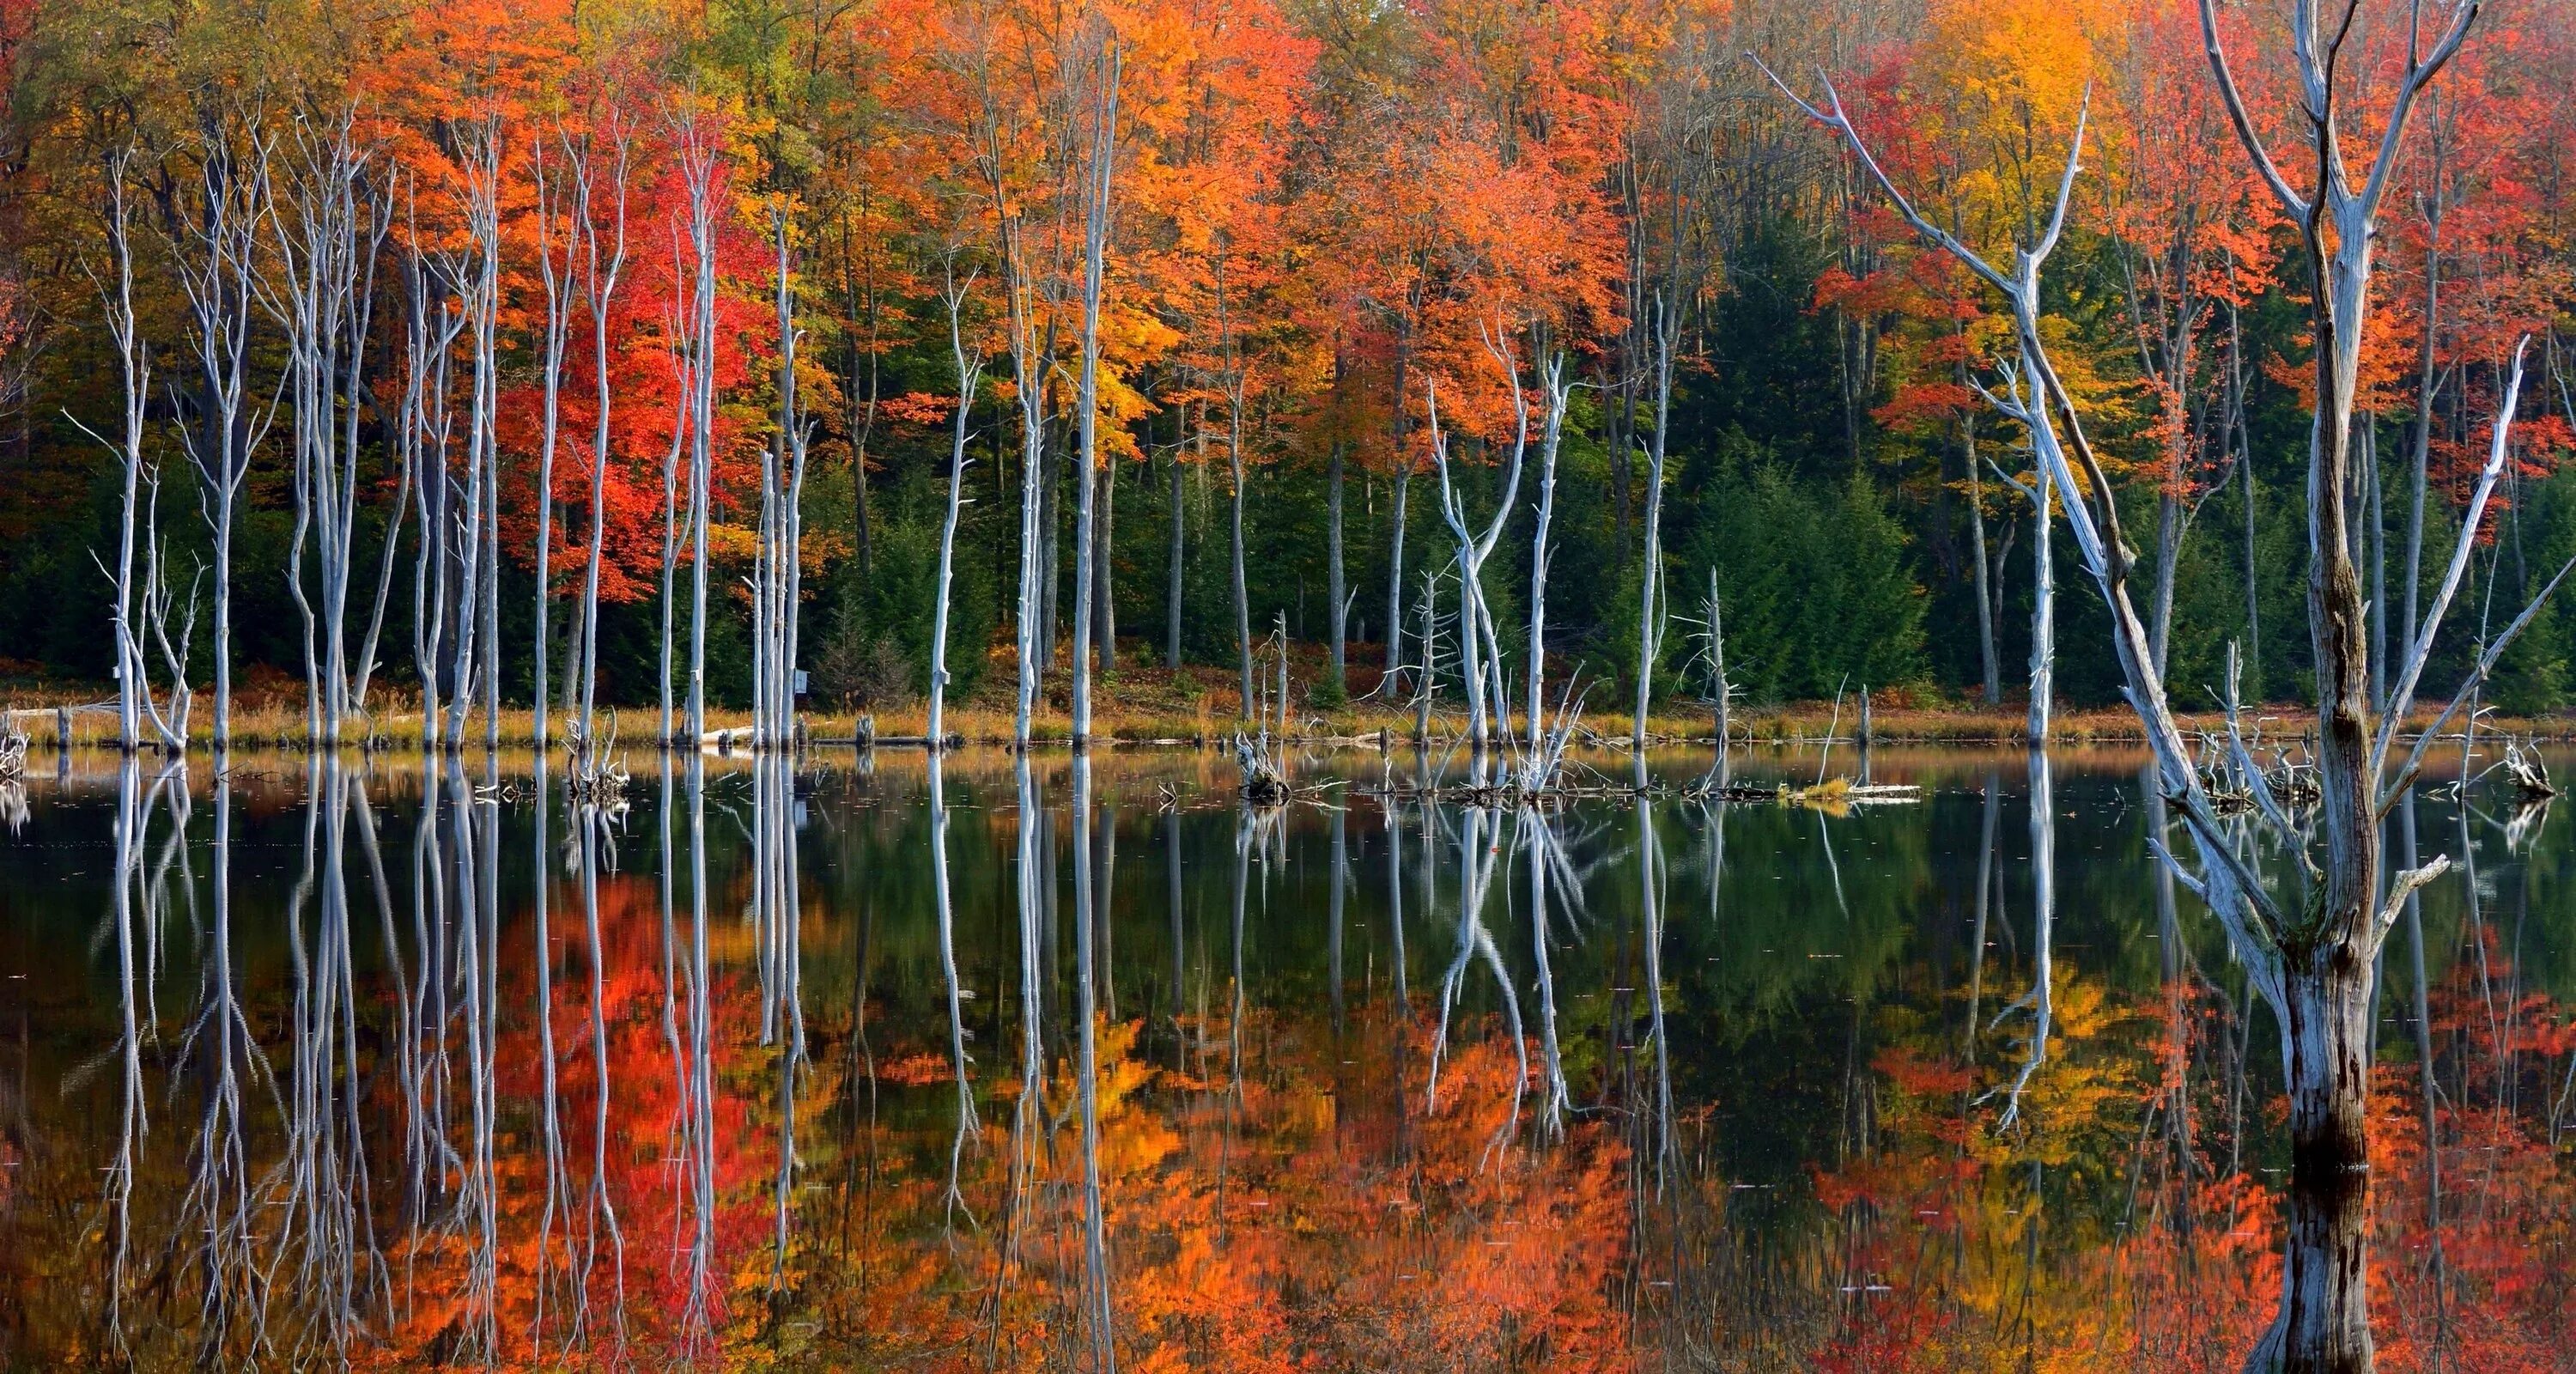 Деревья смотрят в воду. Отражение осенних деревьев в воде. Осень озеро. Деревья отражаются в воде. Отражение осеннего леса в воде.